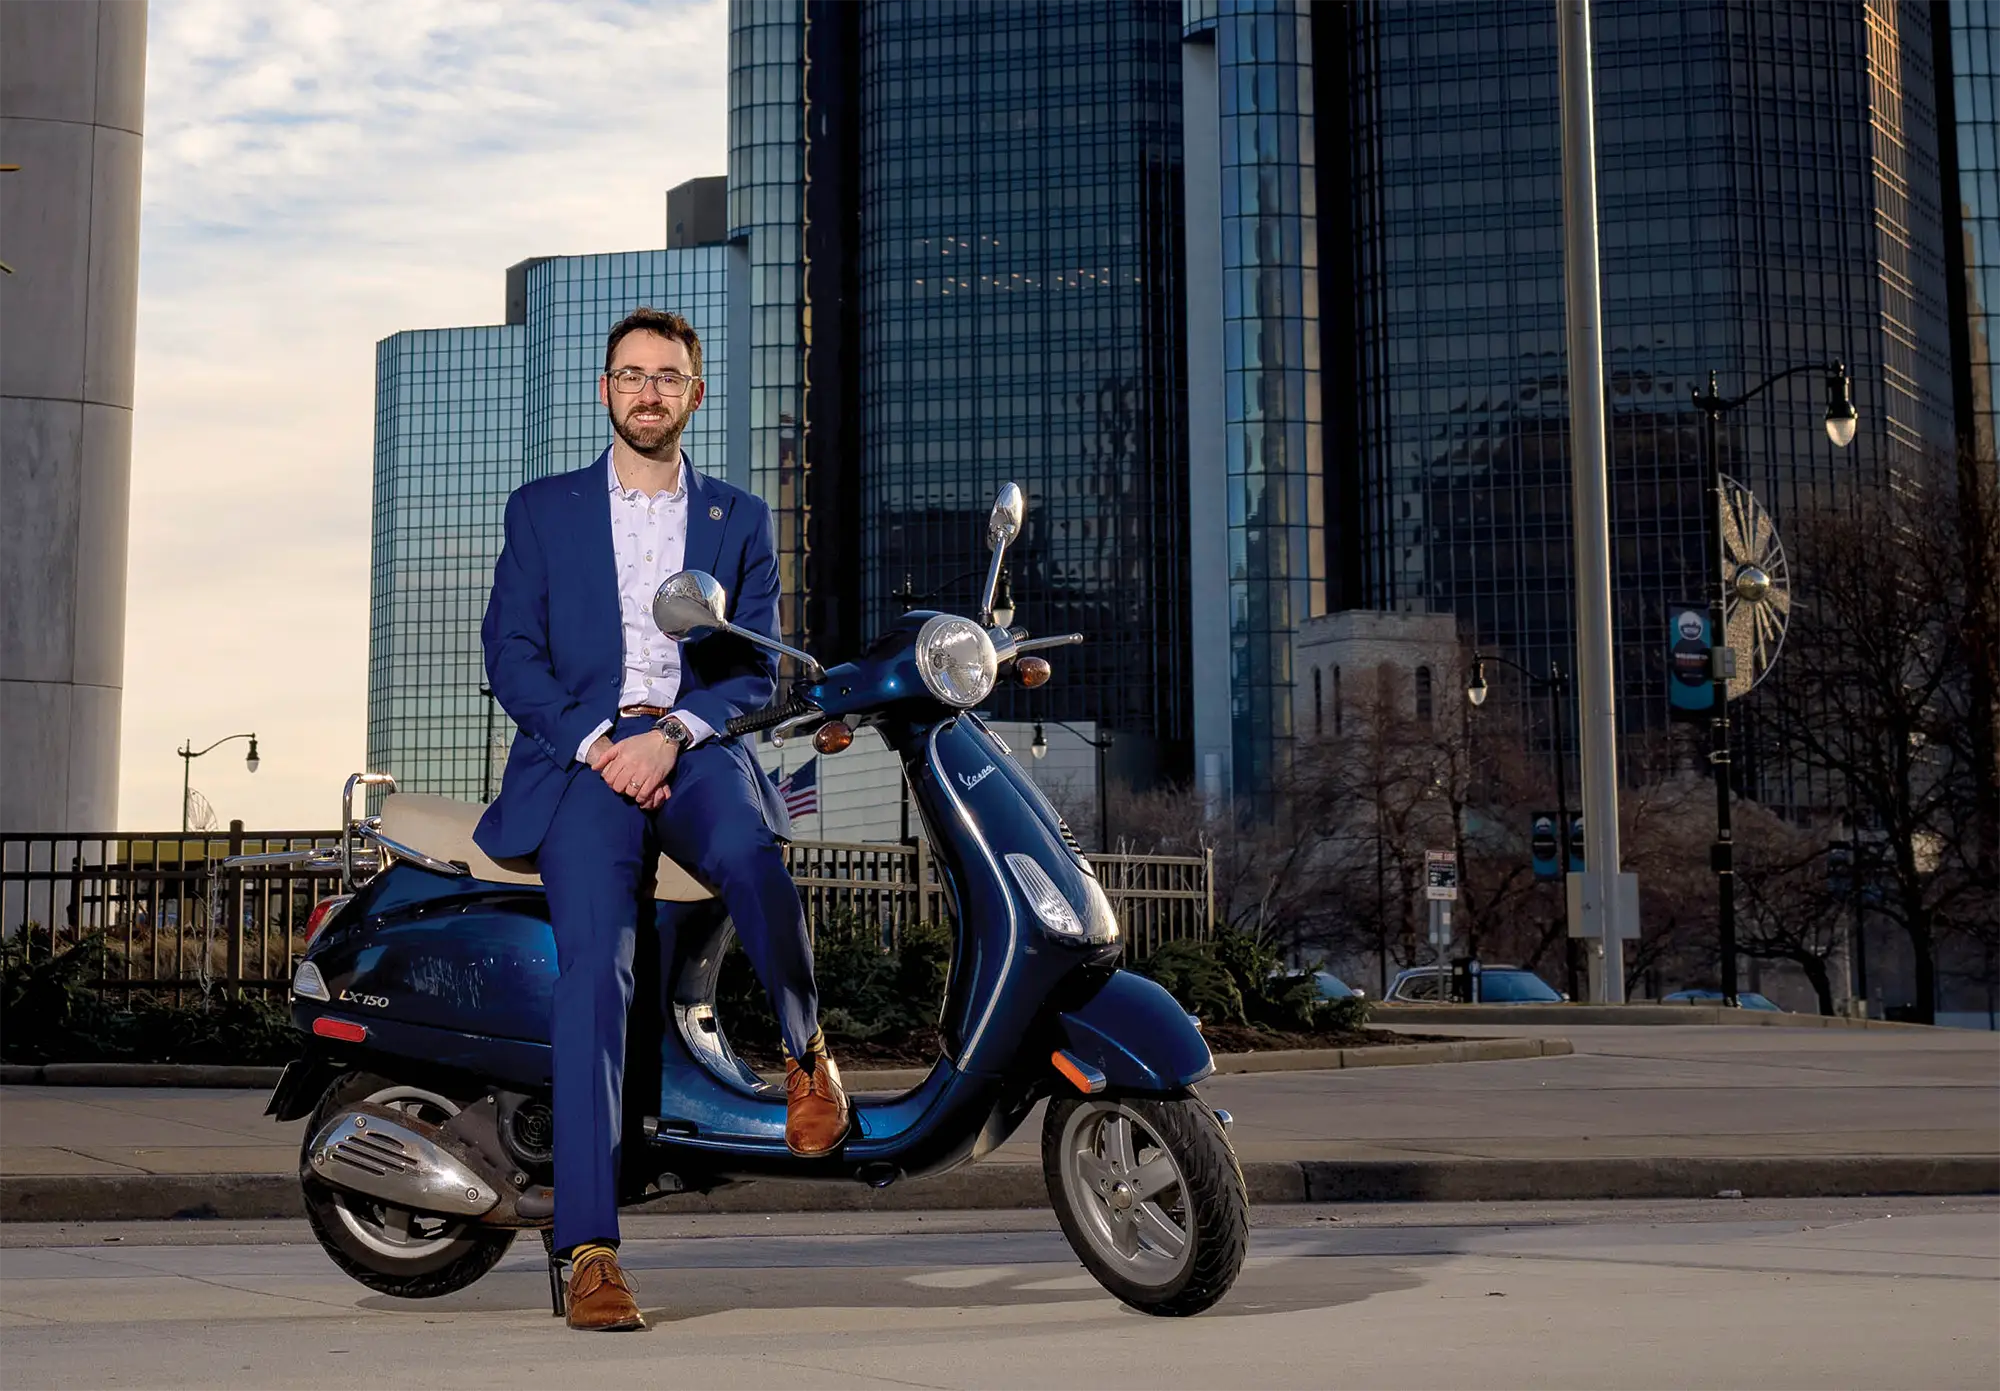 Sam Krassenstein on a parked motorbike wearing a suit